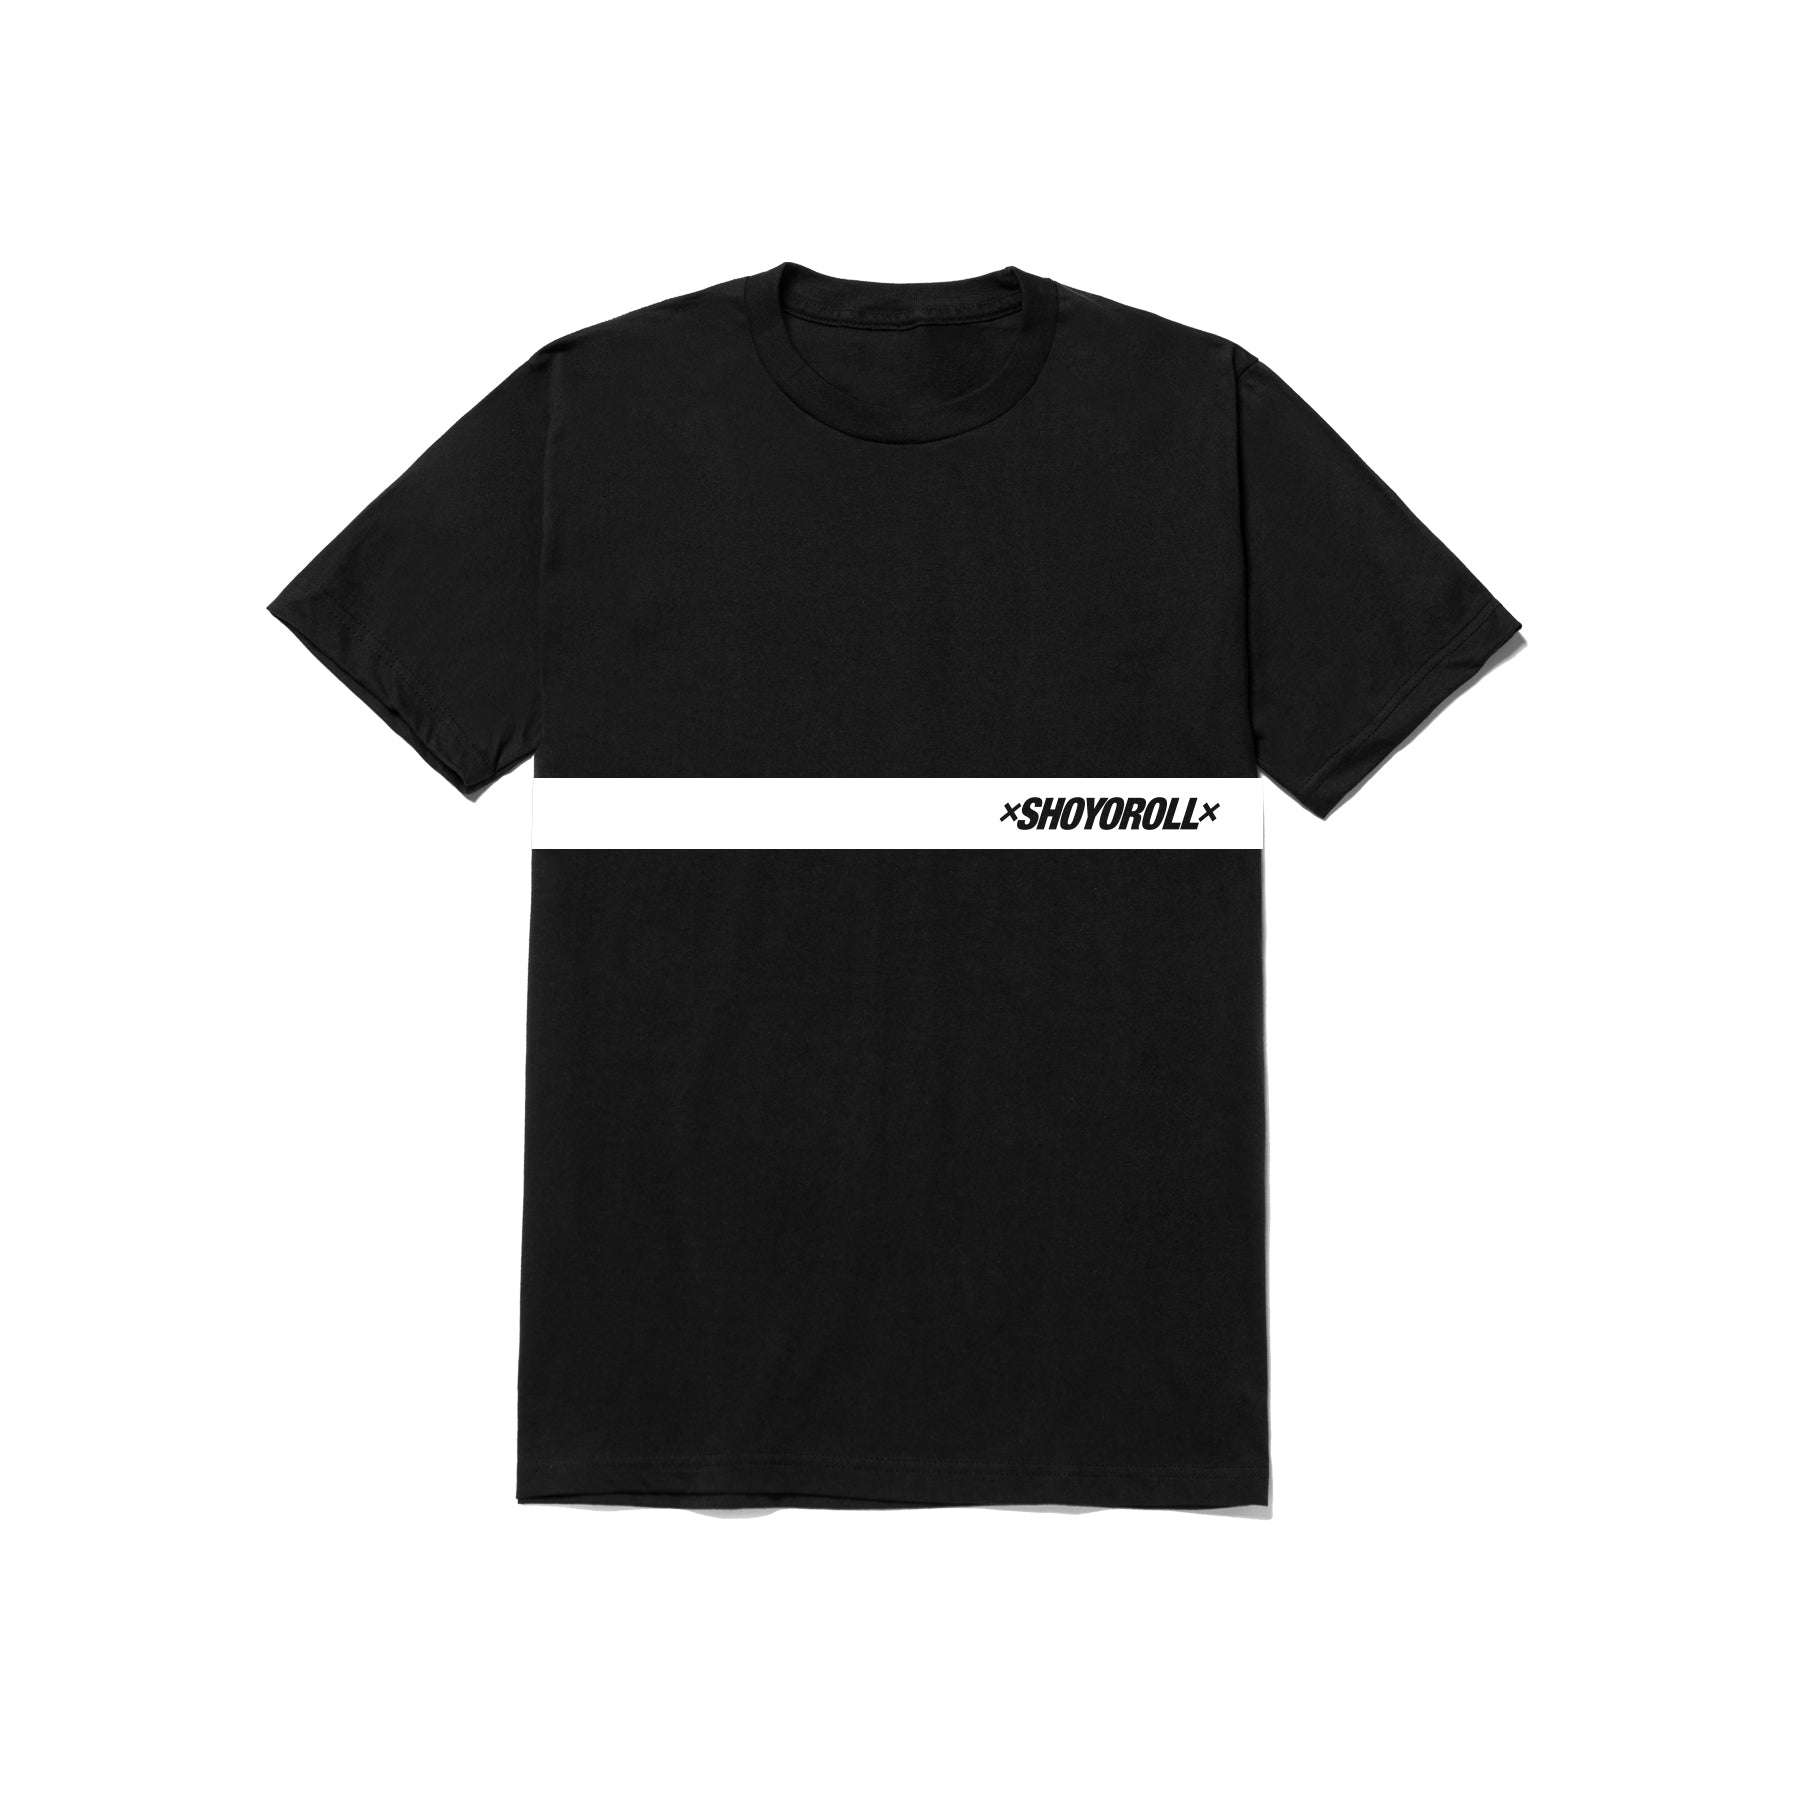 black-tshirt-banner - Branded Image